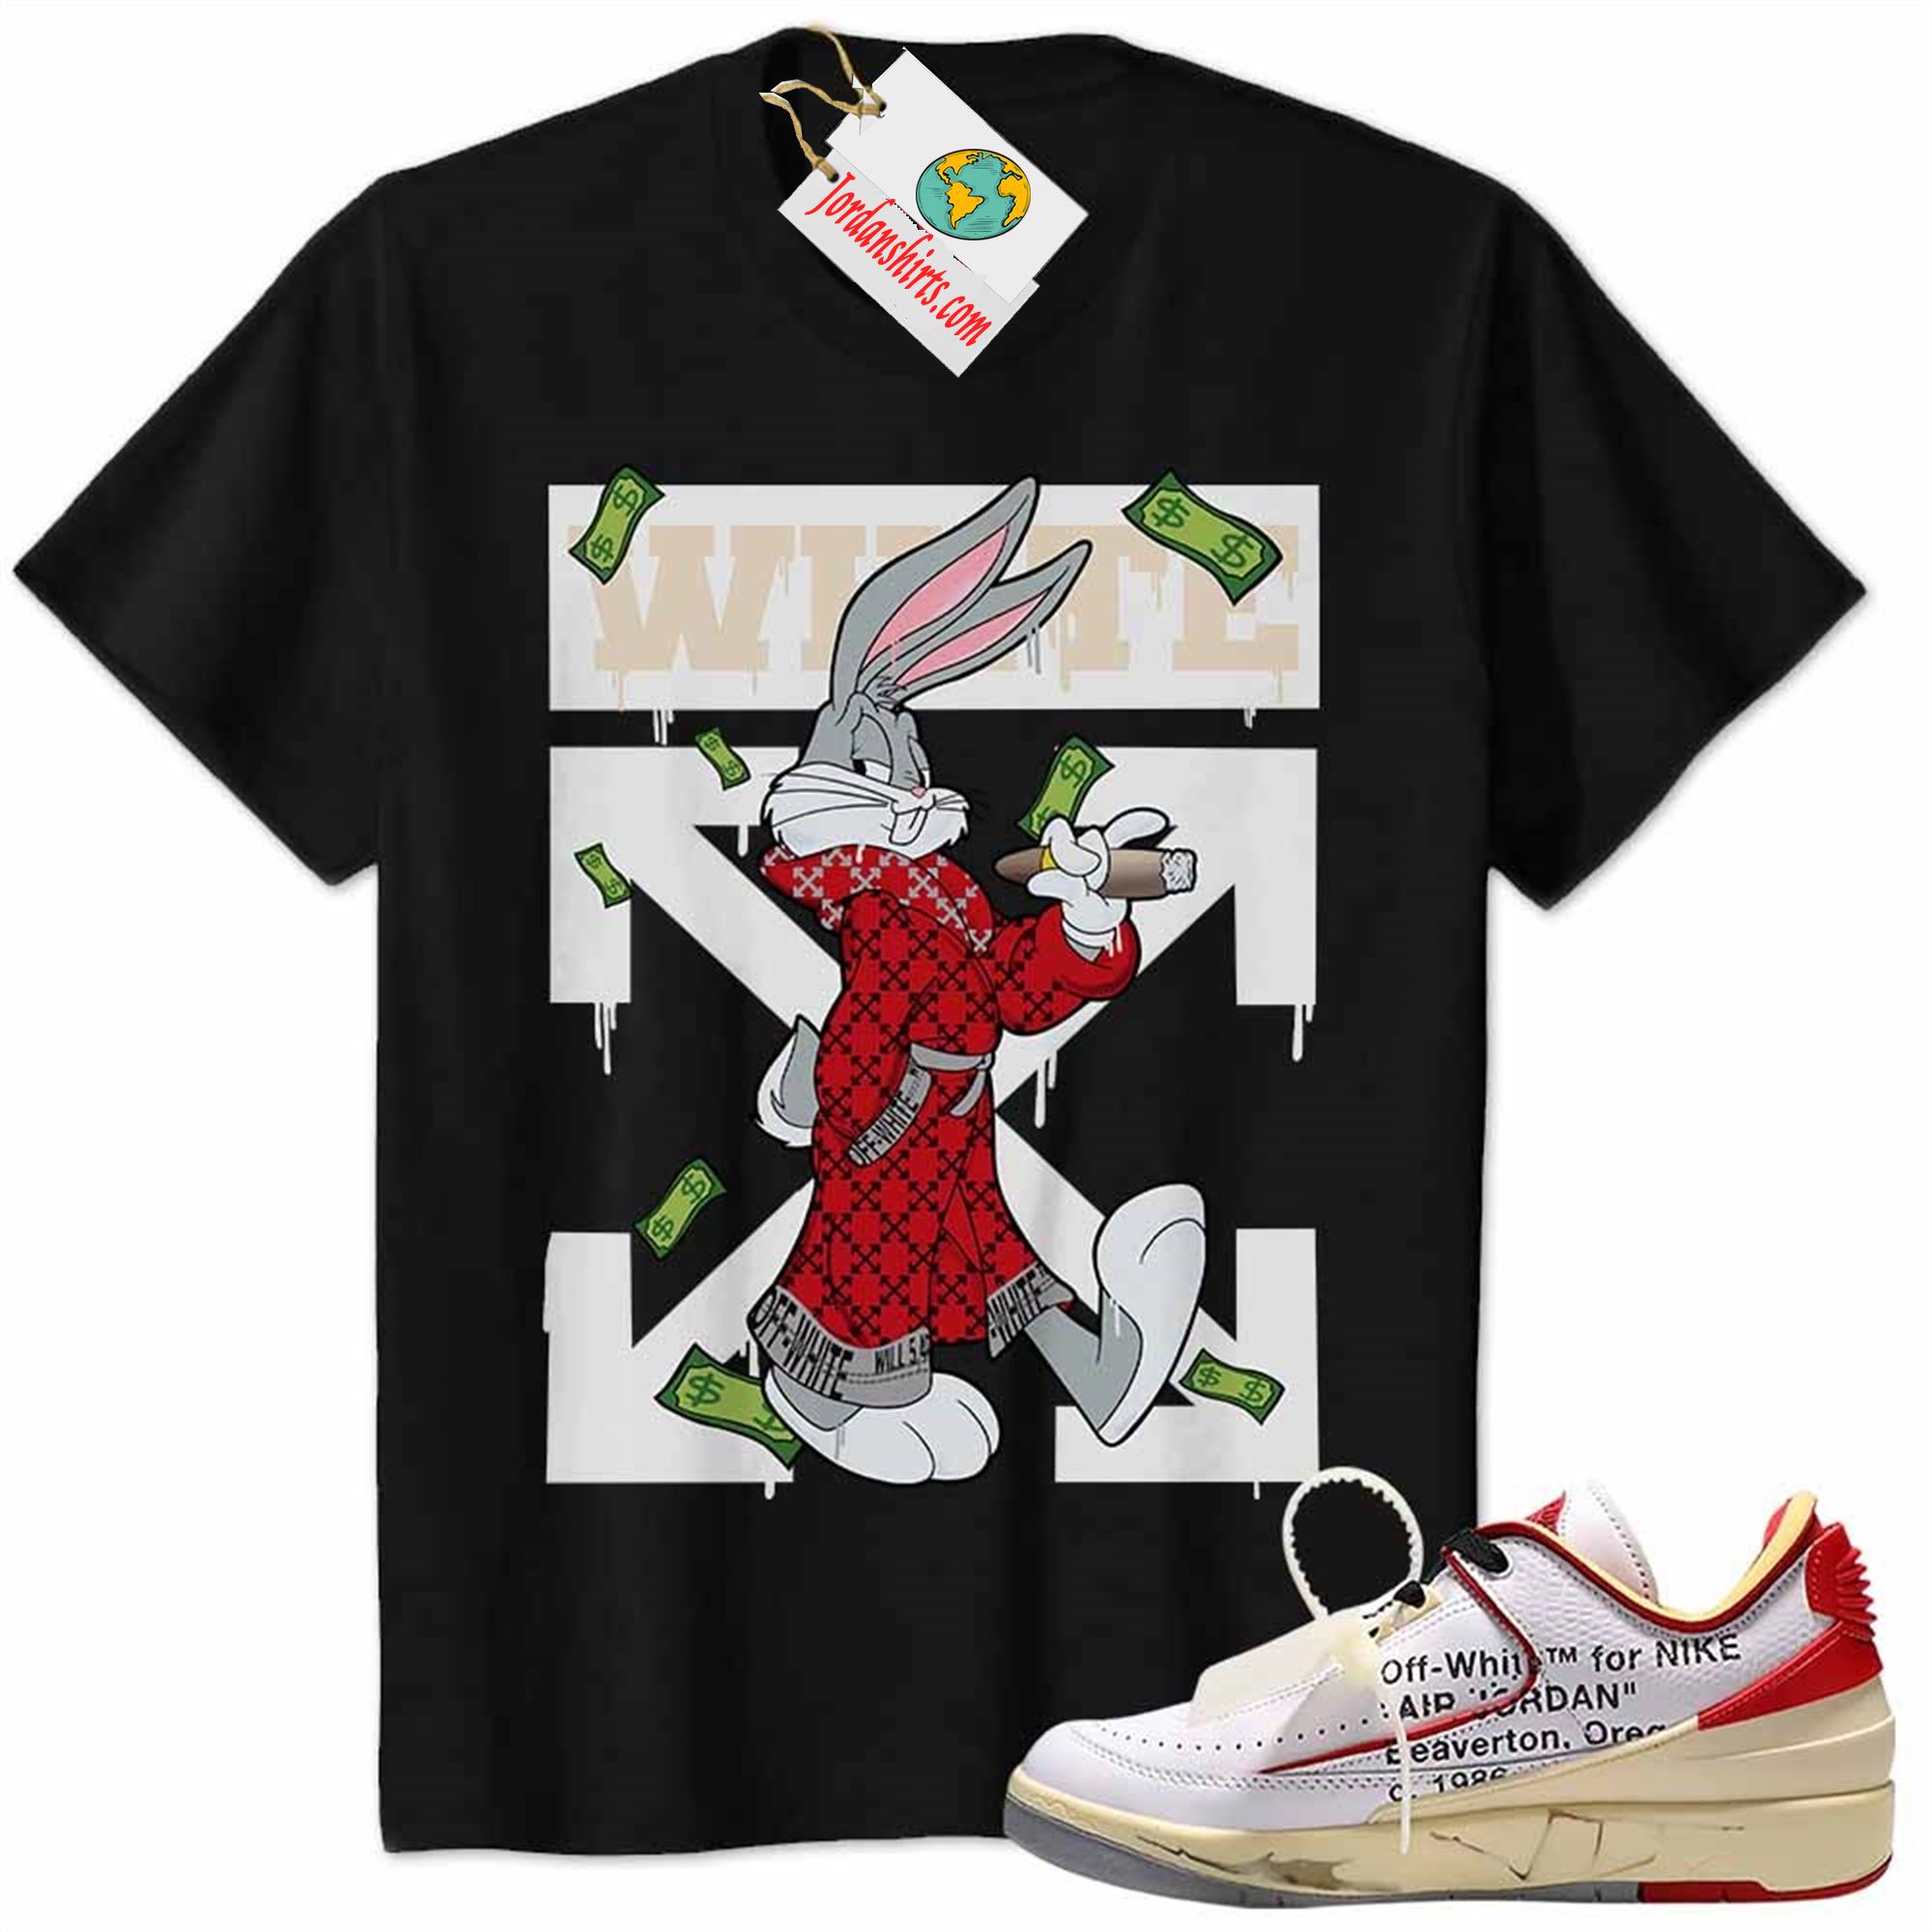 Jordan 2 Shirt, Jordan 2 Low White Red Off-white Shirt Bug Bunny Smokes Weed Money Falling Black Size Up To 5xl